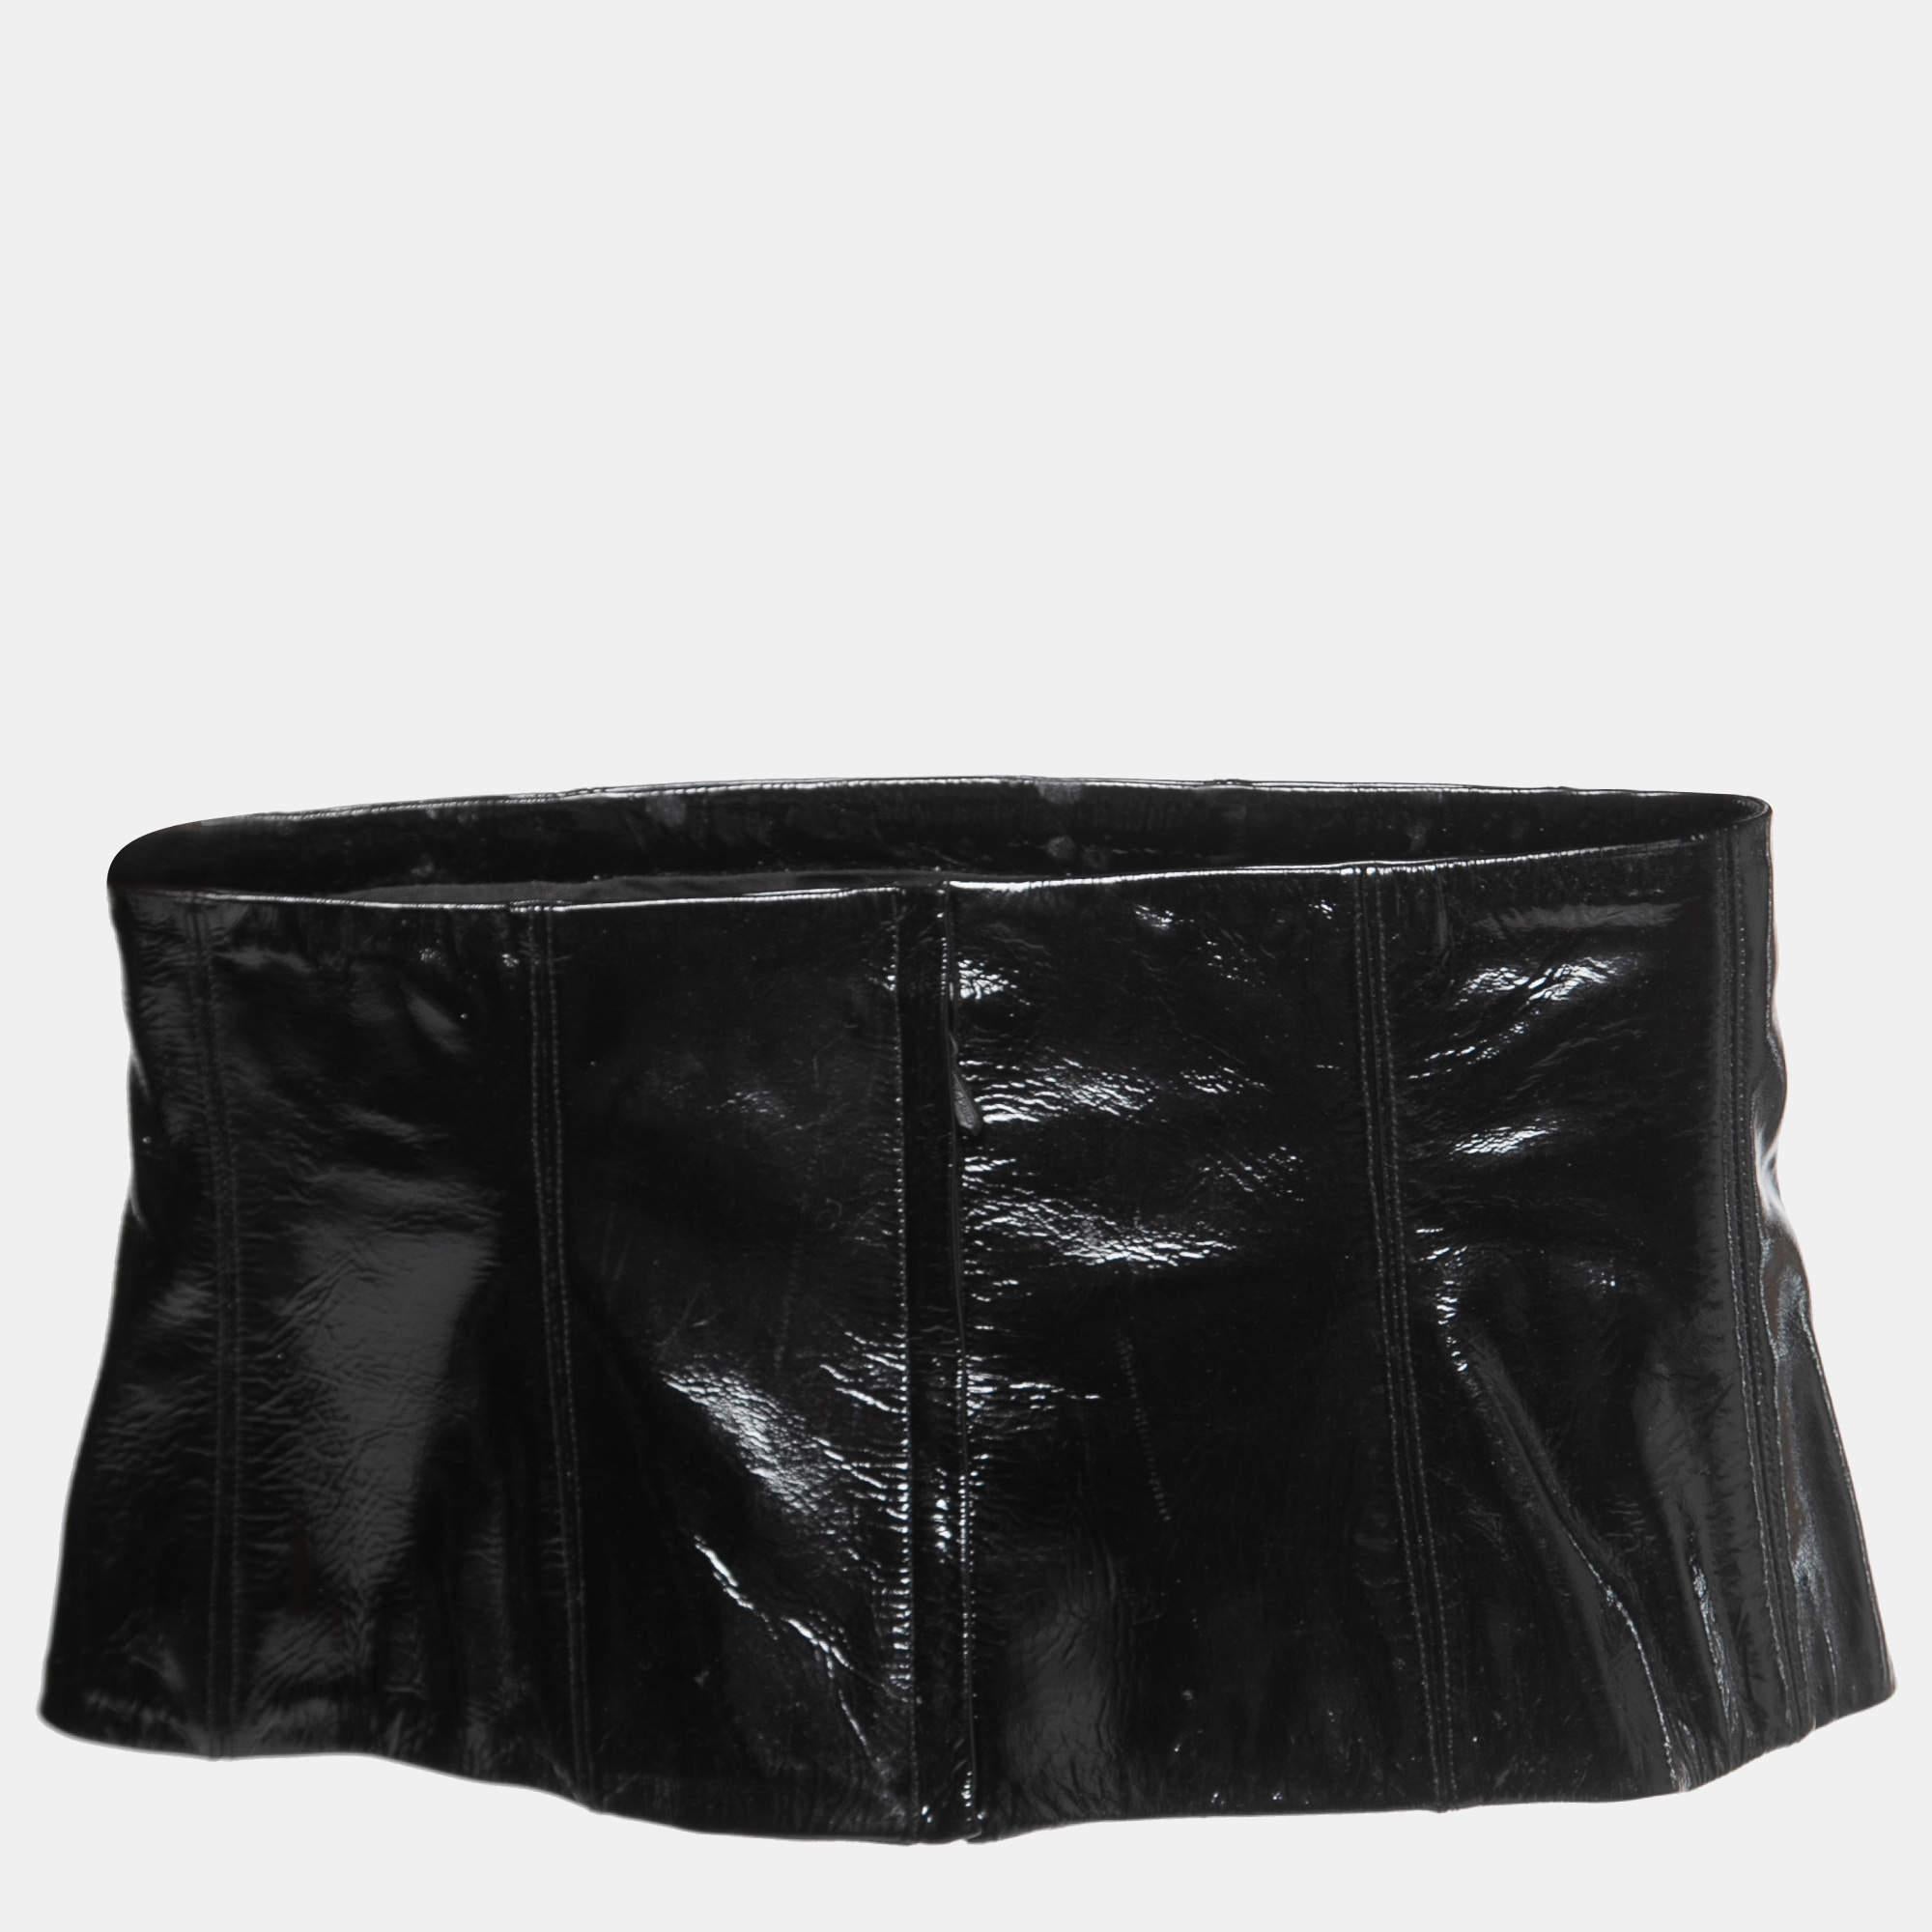 La ceinture corset de Chanel peut rehausser un simple T-shirt ou une robe droite imprimée. Il est en cuir noir élégant et se ferme à l'aide d'une fermeture à glissière.

